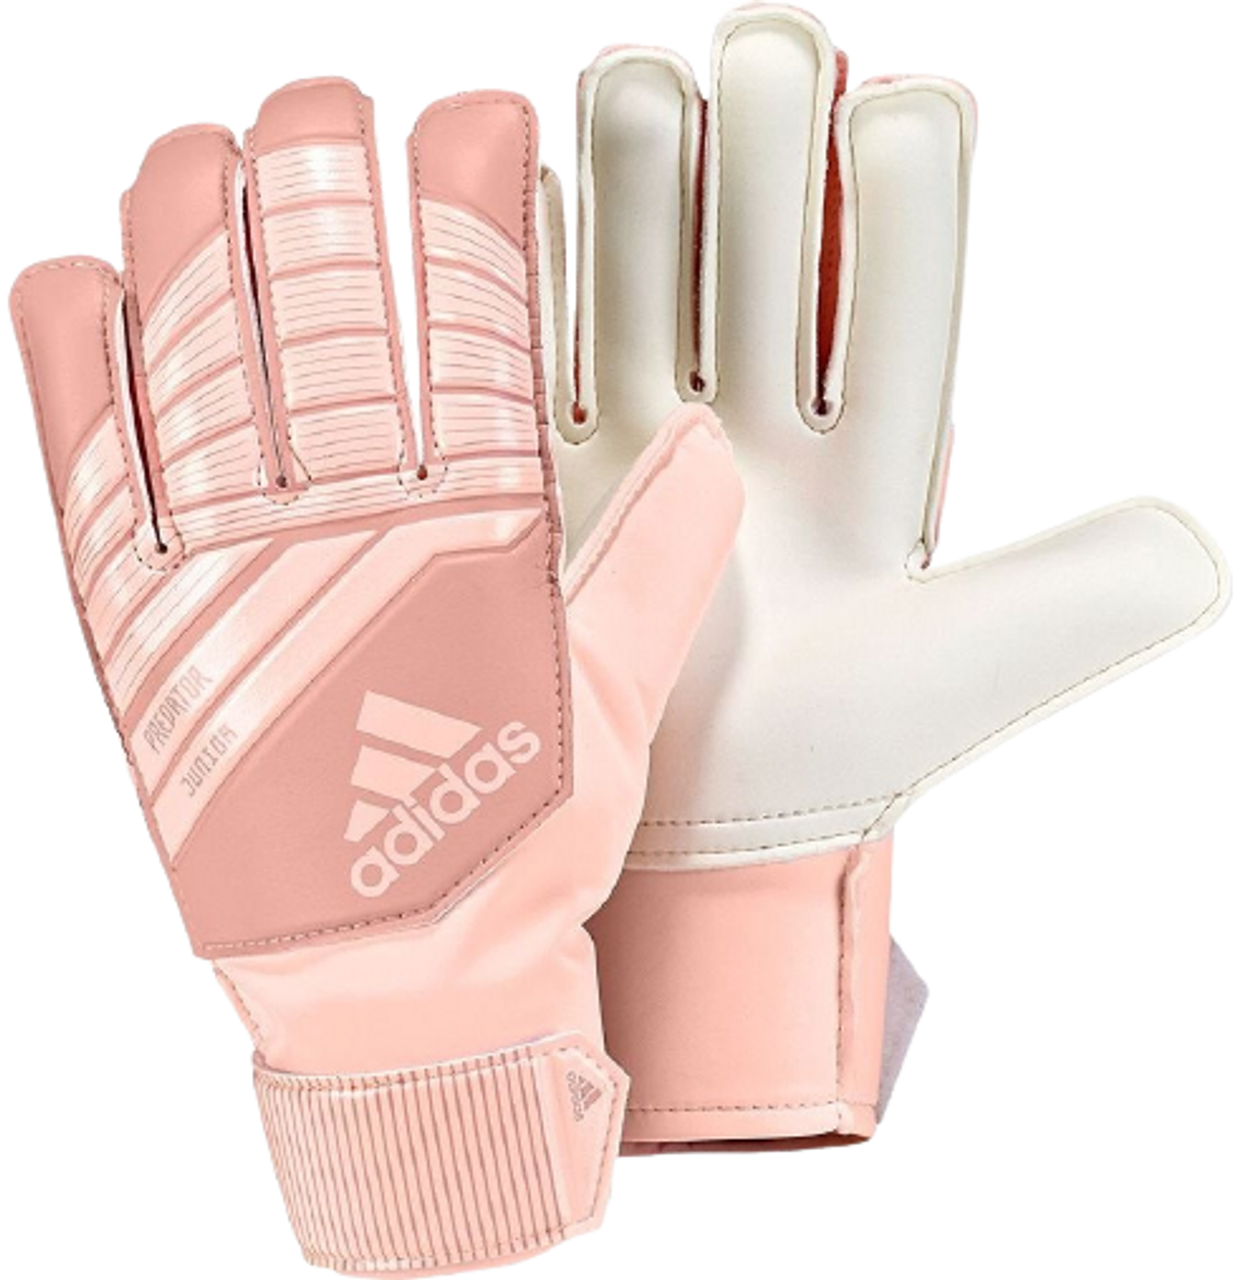 adidas Predator Junior Gloves - Pink